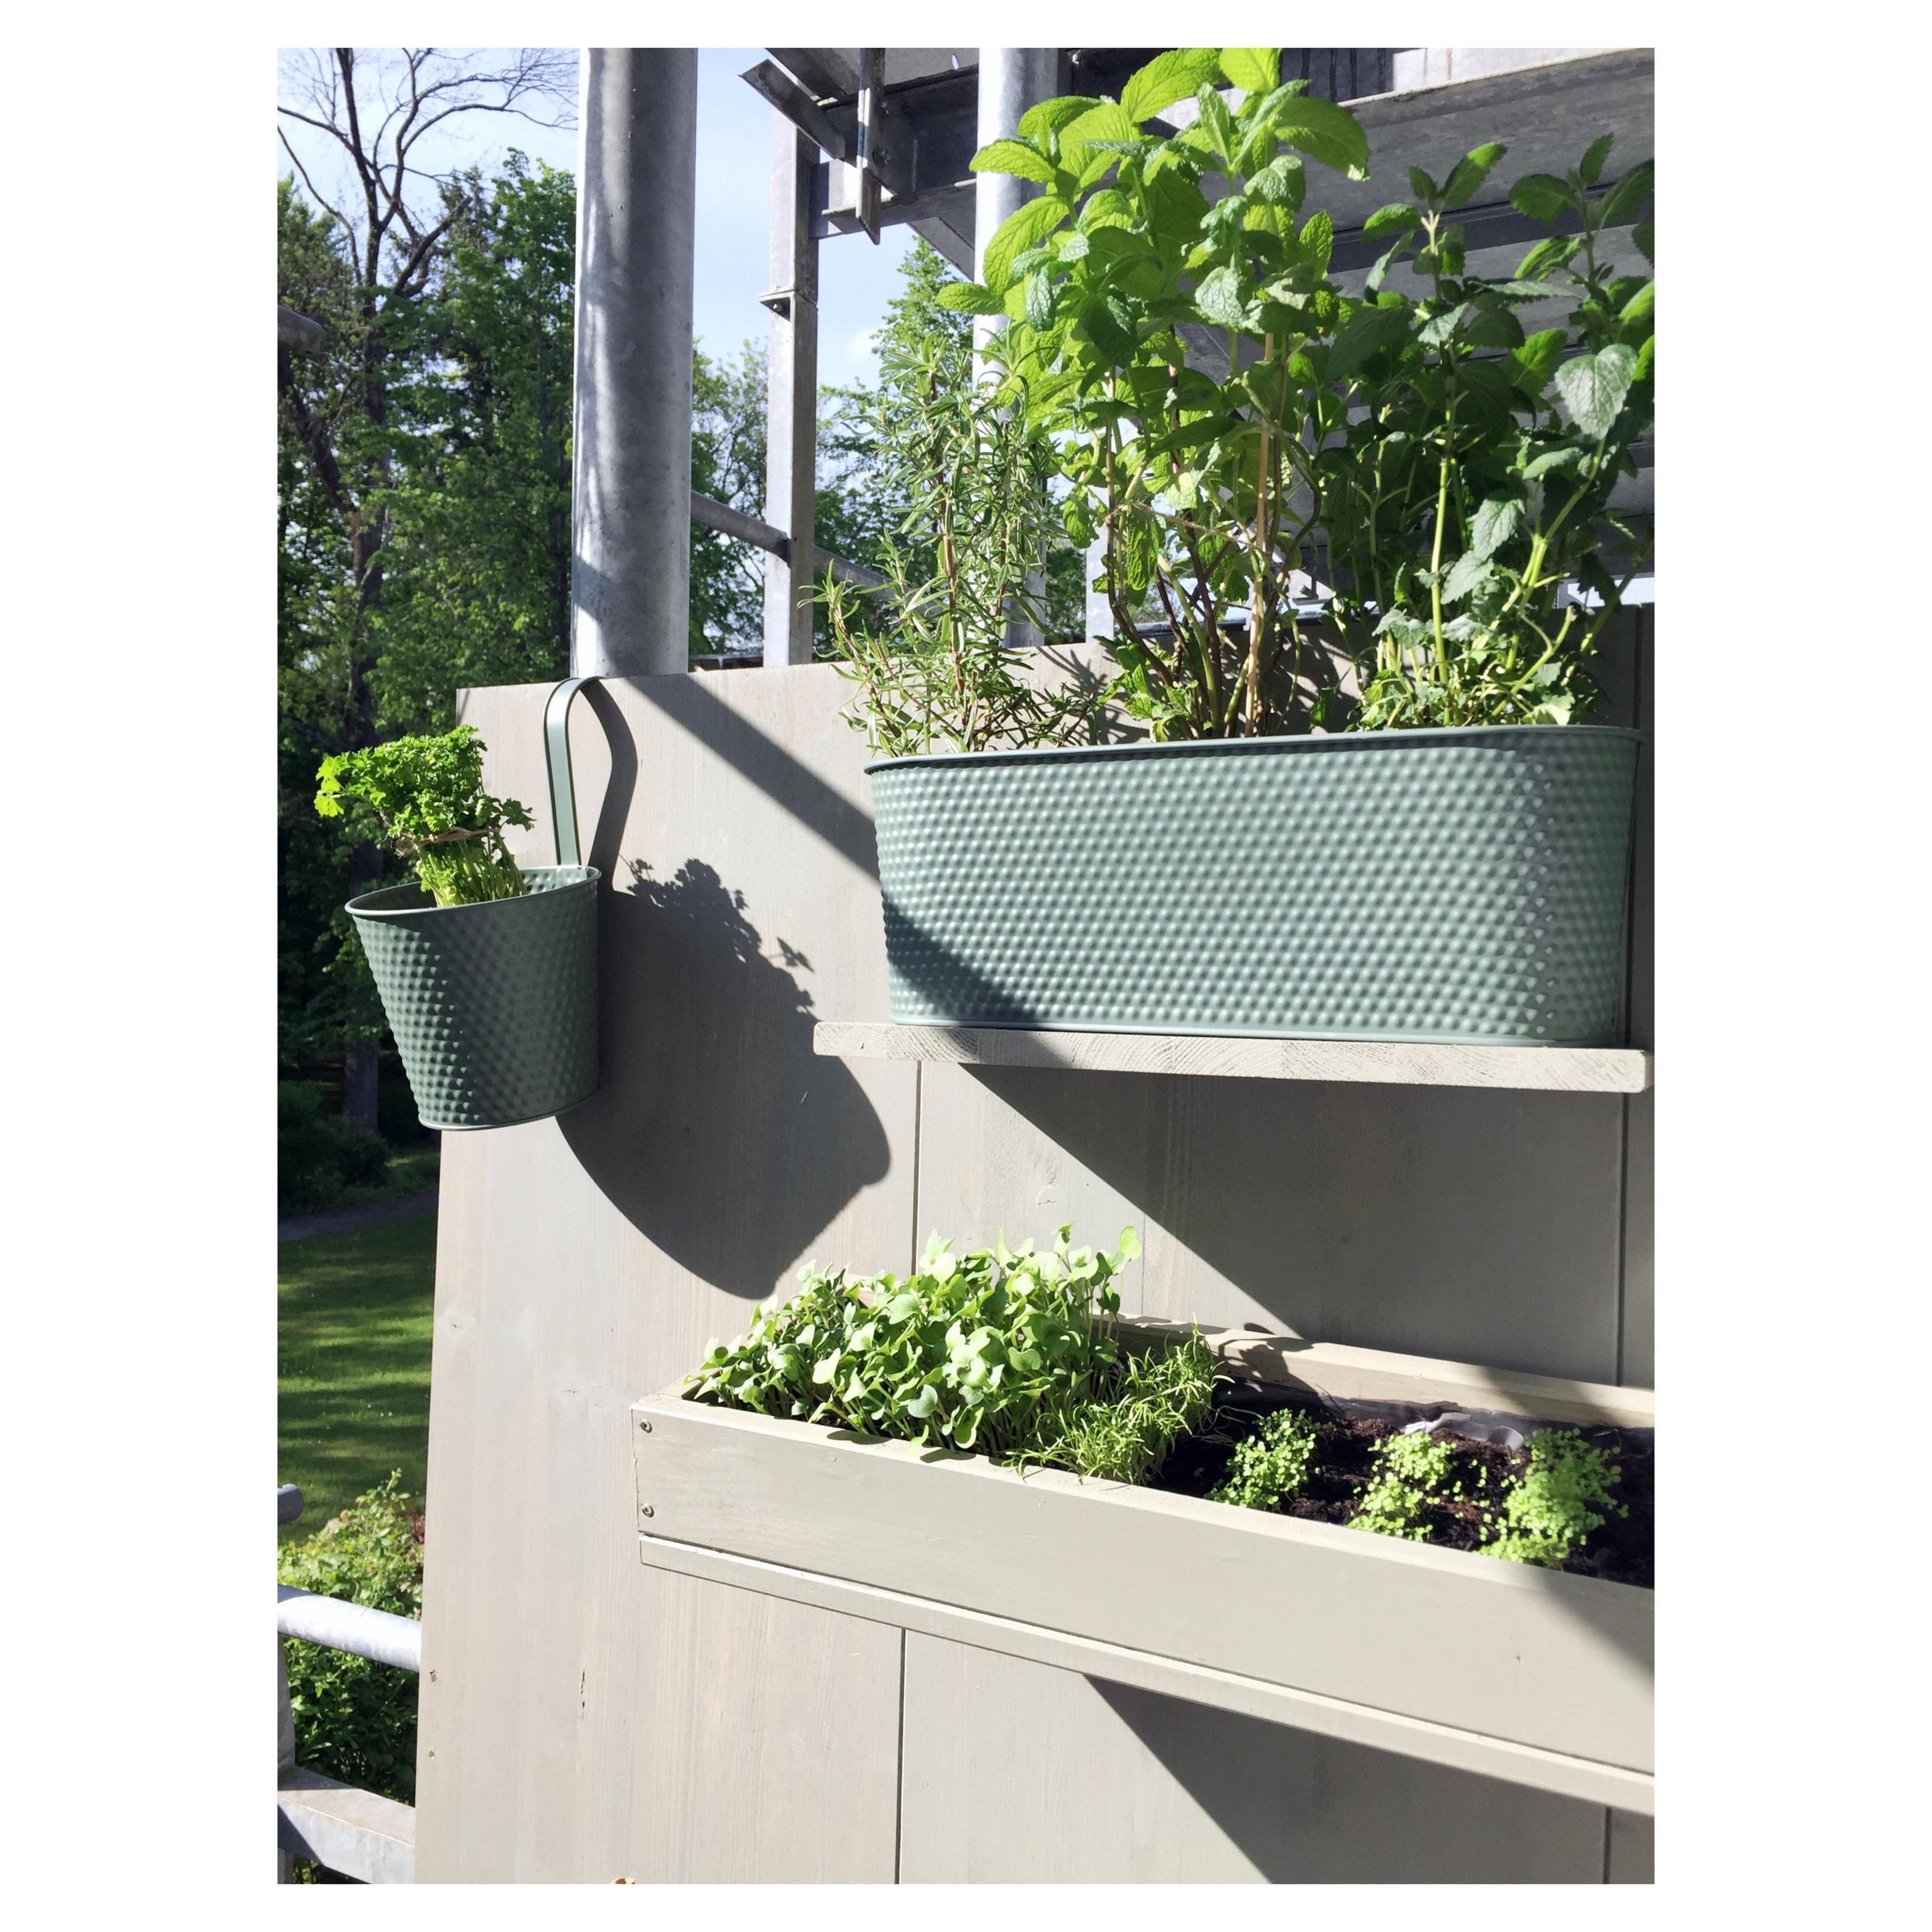 Gardening auf dem Balkon <3
Pflanzenwand ist selbstgebaut!

#balkon #pflanzenliebe #diy #kreativsein #grünoase